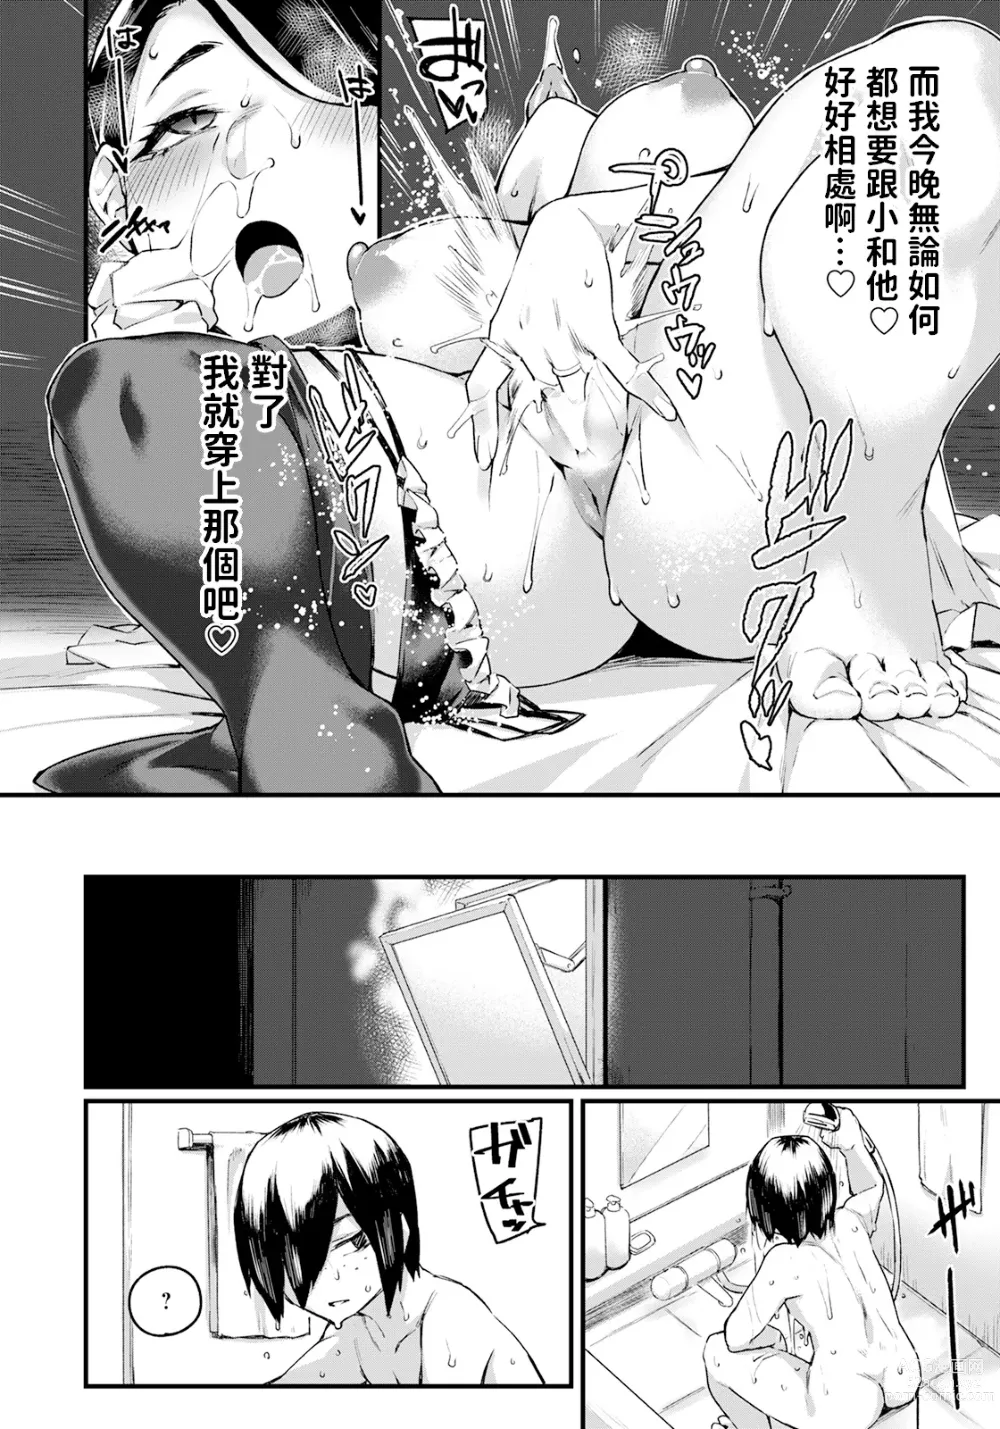 Page 4 of manga Mamahaha no Yuuwaku